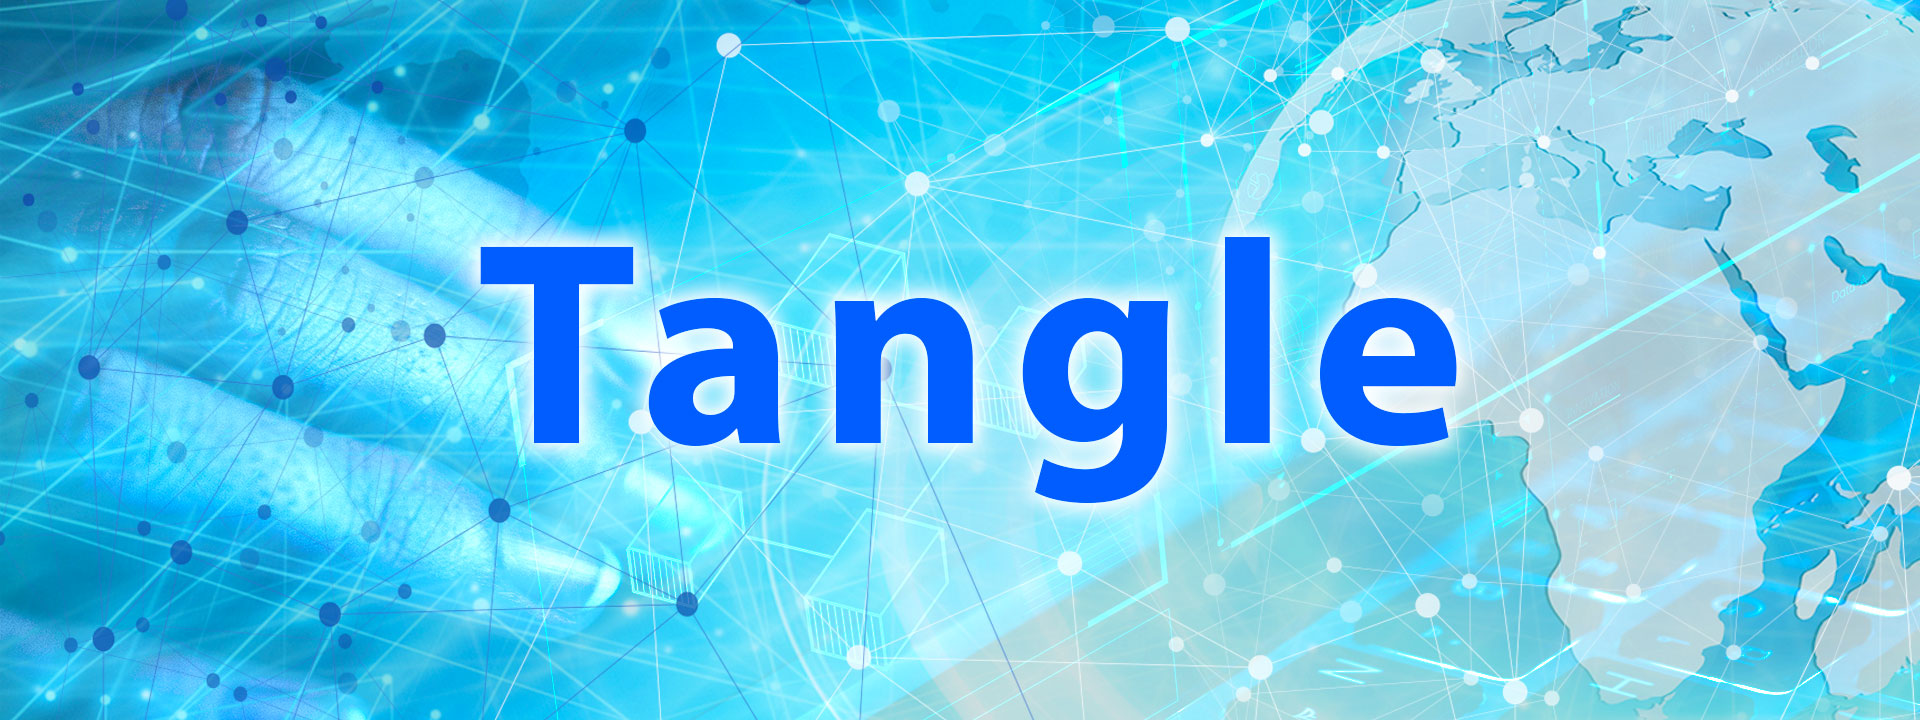 tangle - artech digital - 03